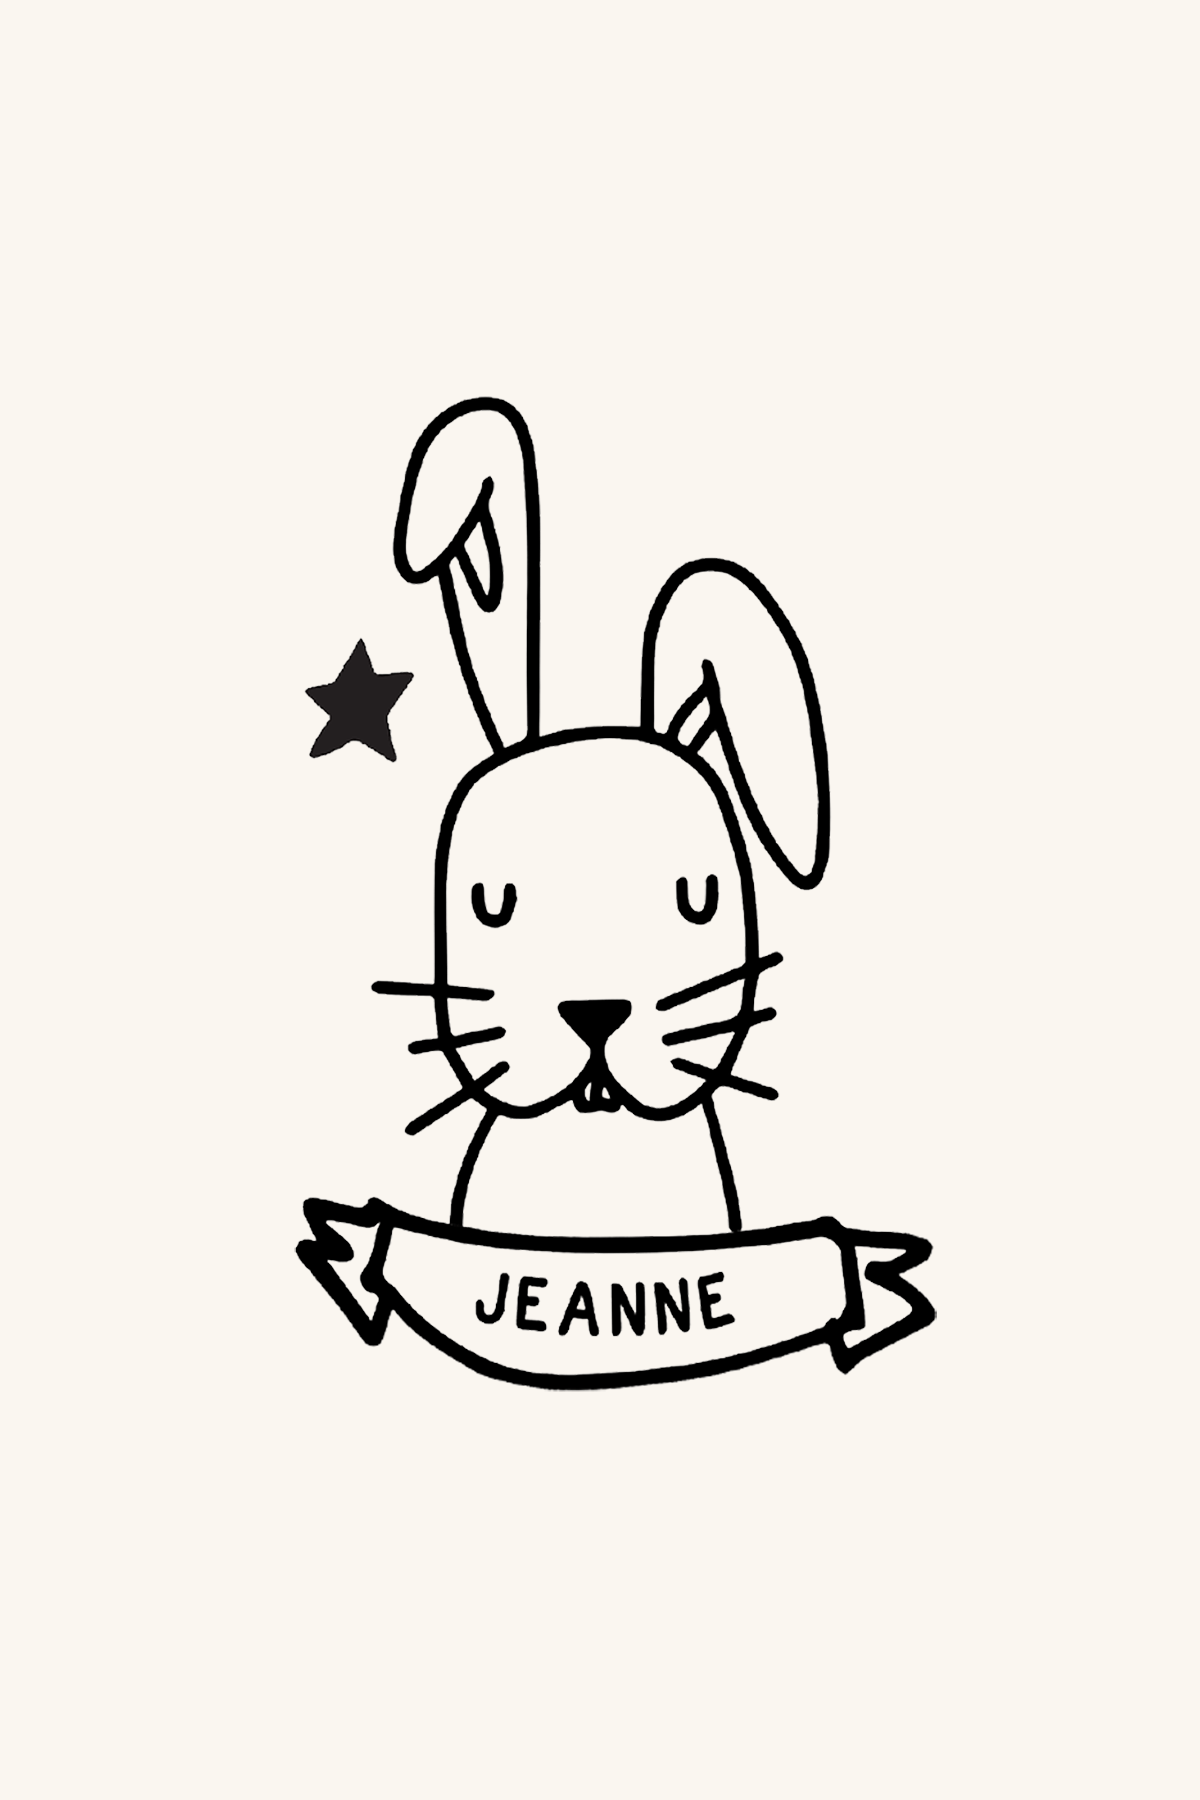 Dibujo de un conejo